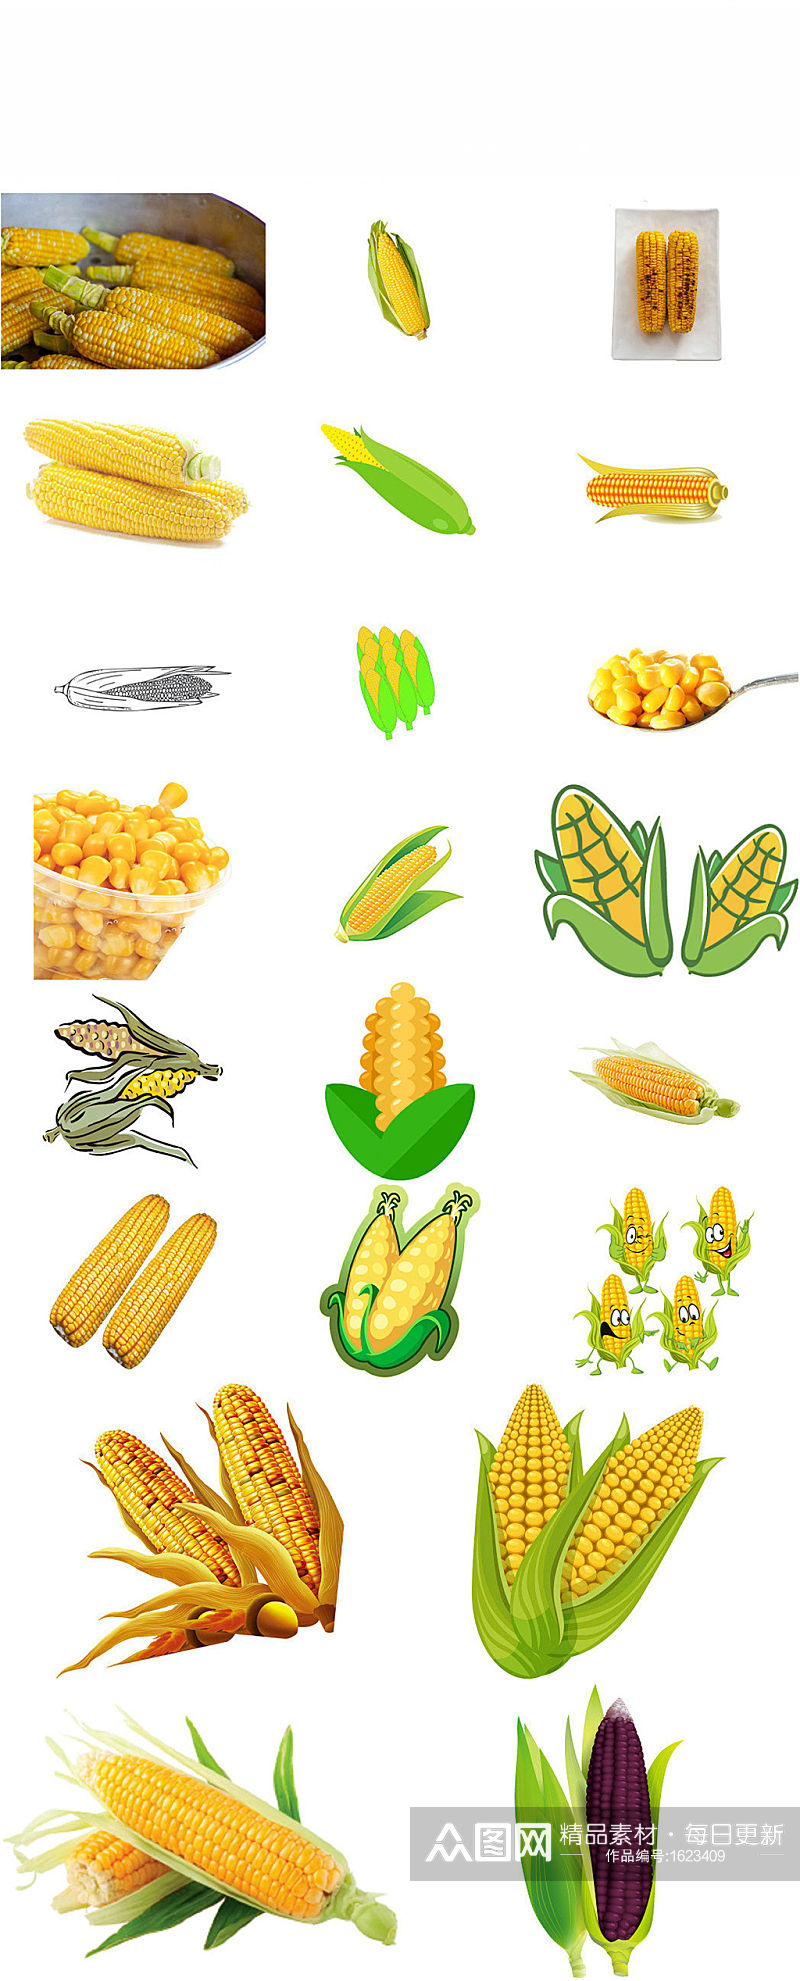 玉米农作物庄稼玉米设计素材素材